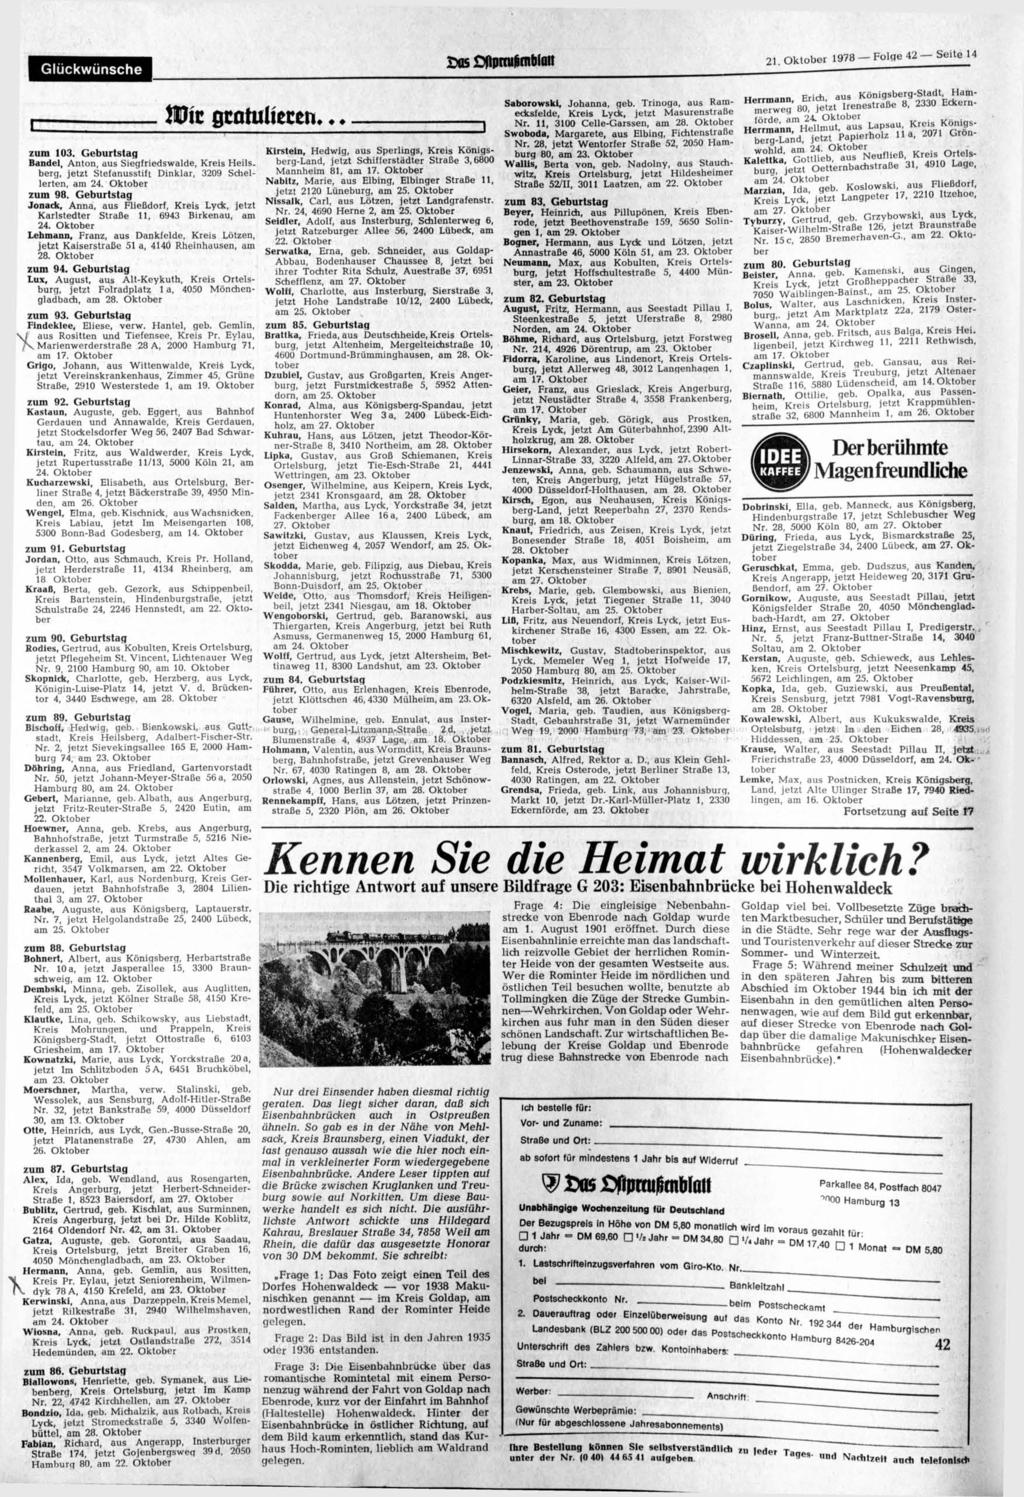 Glückwünsche 21. Oktober 1978 - Folge 42-Seite 14 r zum 103. Geburtstag Bändel, Anton, aus Siegfriedswalde, Kreis Heils, berg, jetzt Stefanusstift Dinklar, 3209 Schellerten, am 24. Oktober zum 98.